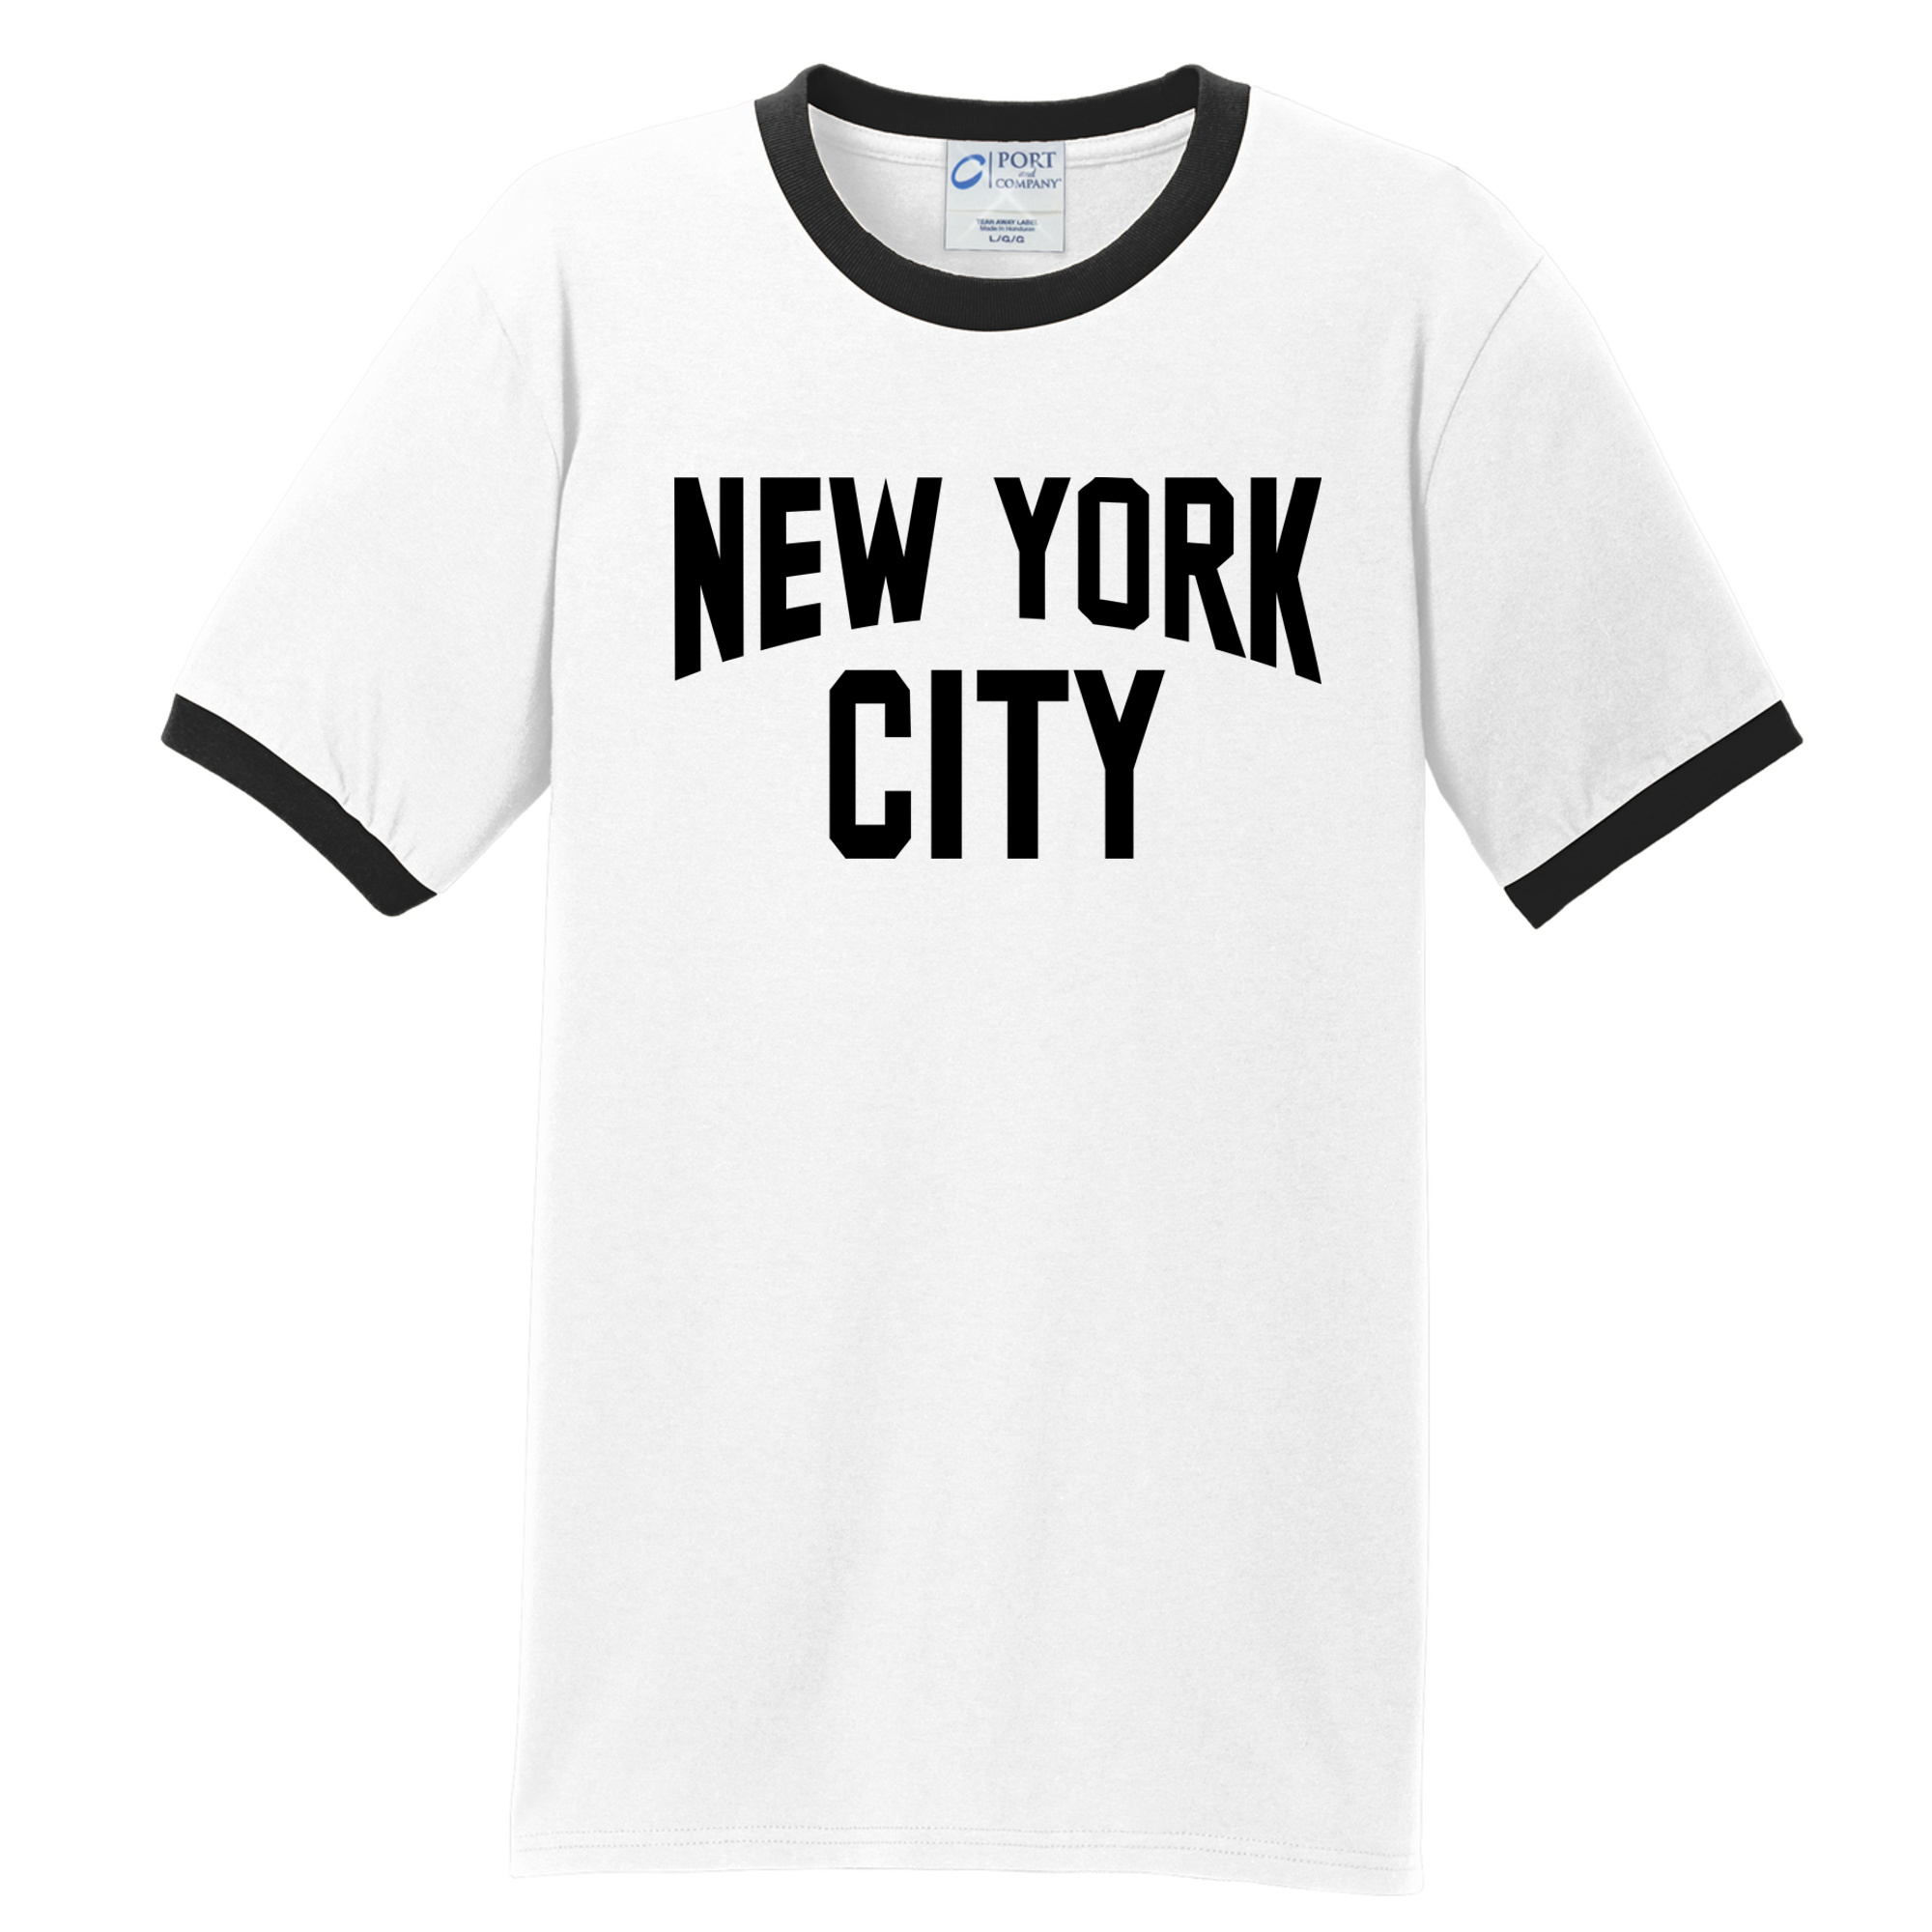 New York City Ringer T-Shirt - John Lennon